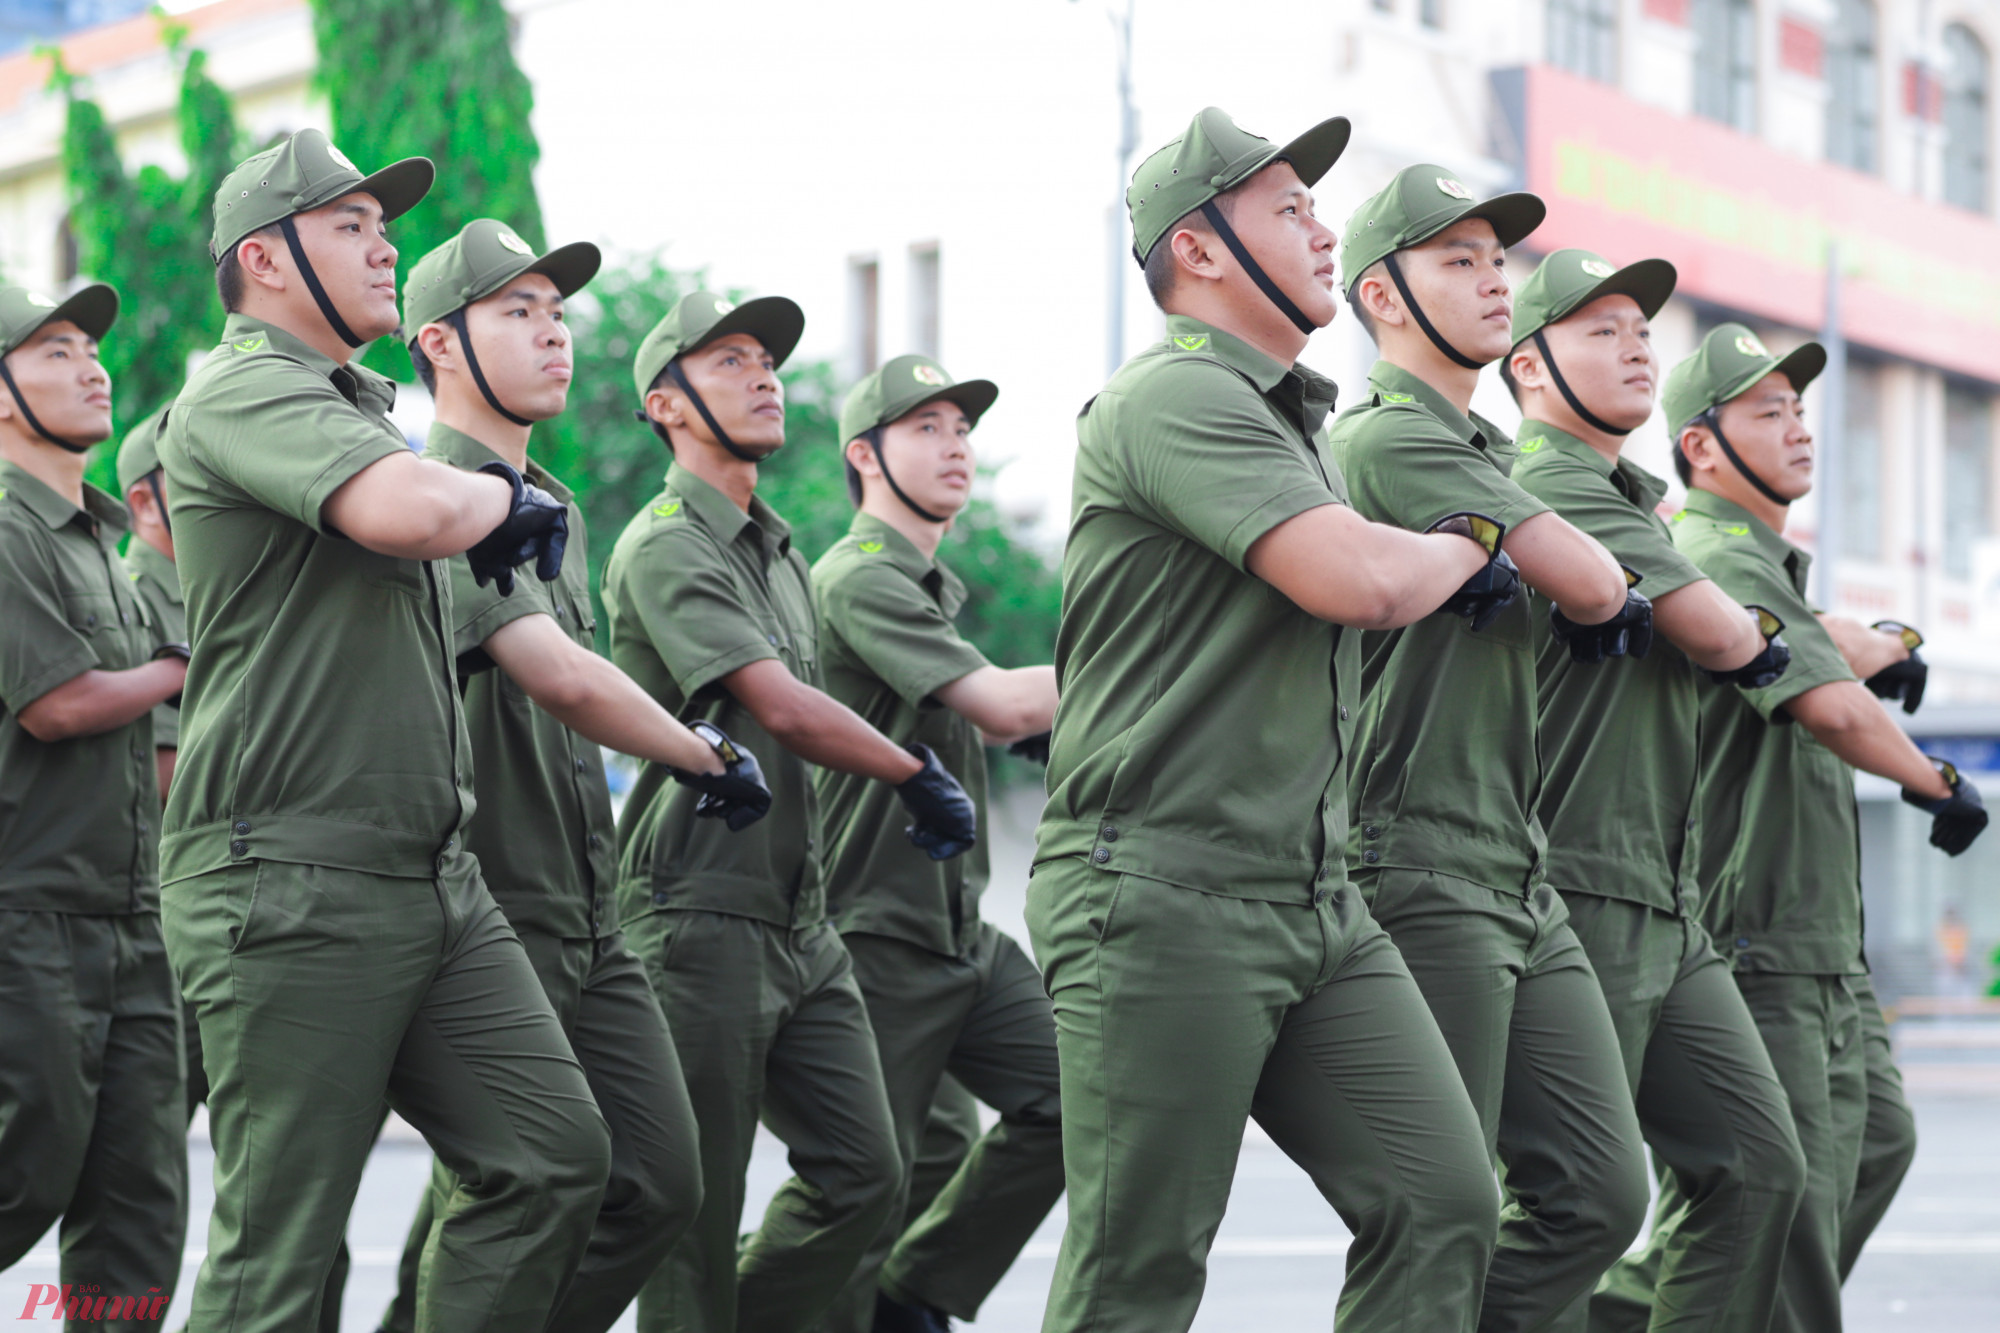 Sáng 1-7, tại TP.HCM diễn ra lễ ra mắt lực lượng tham gia bảo vệ an ninh, trật tự tại cơ sở. Sự kiện được tổ chức tại khu vực đường Lê Lợi (phường Bến Thành, quận 1, TP.HCM).